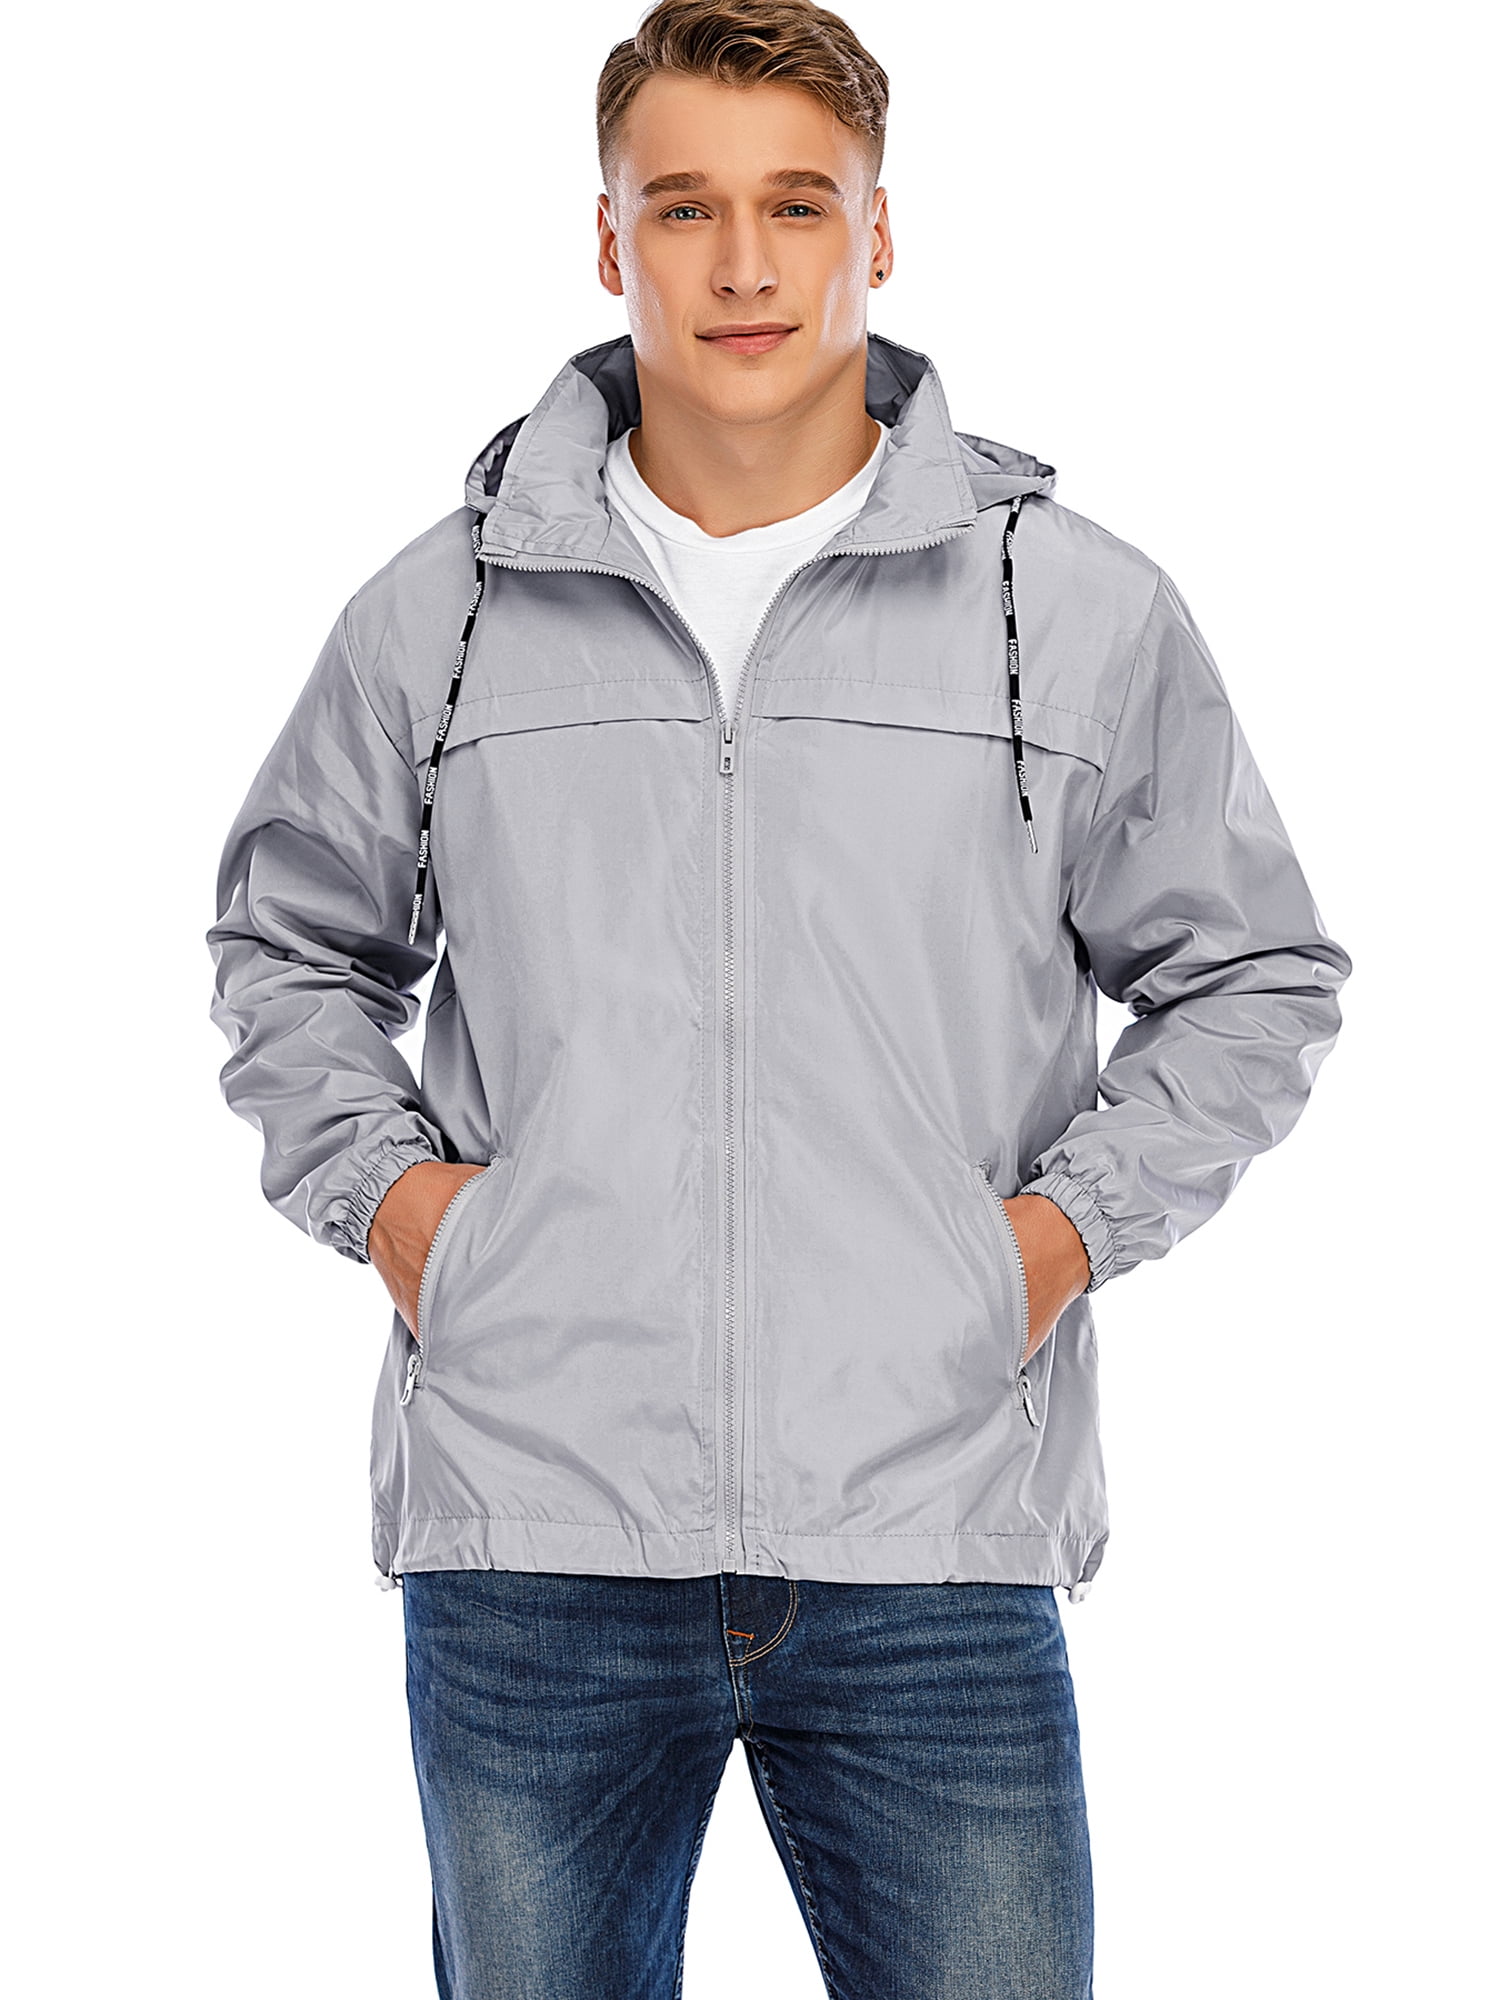 Men's Long Sleeve Windbreaker Casual Lightweight Jacket Hooded Zipperup Outwear